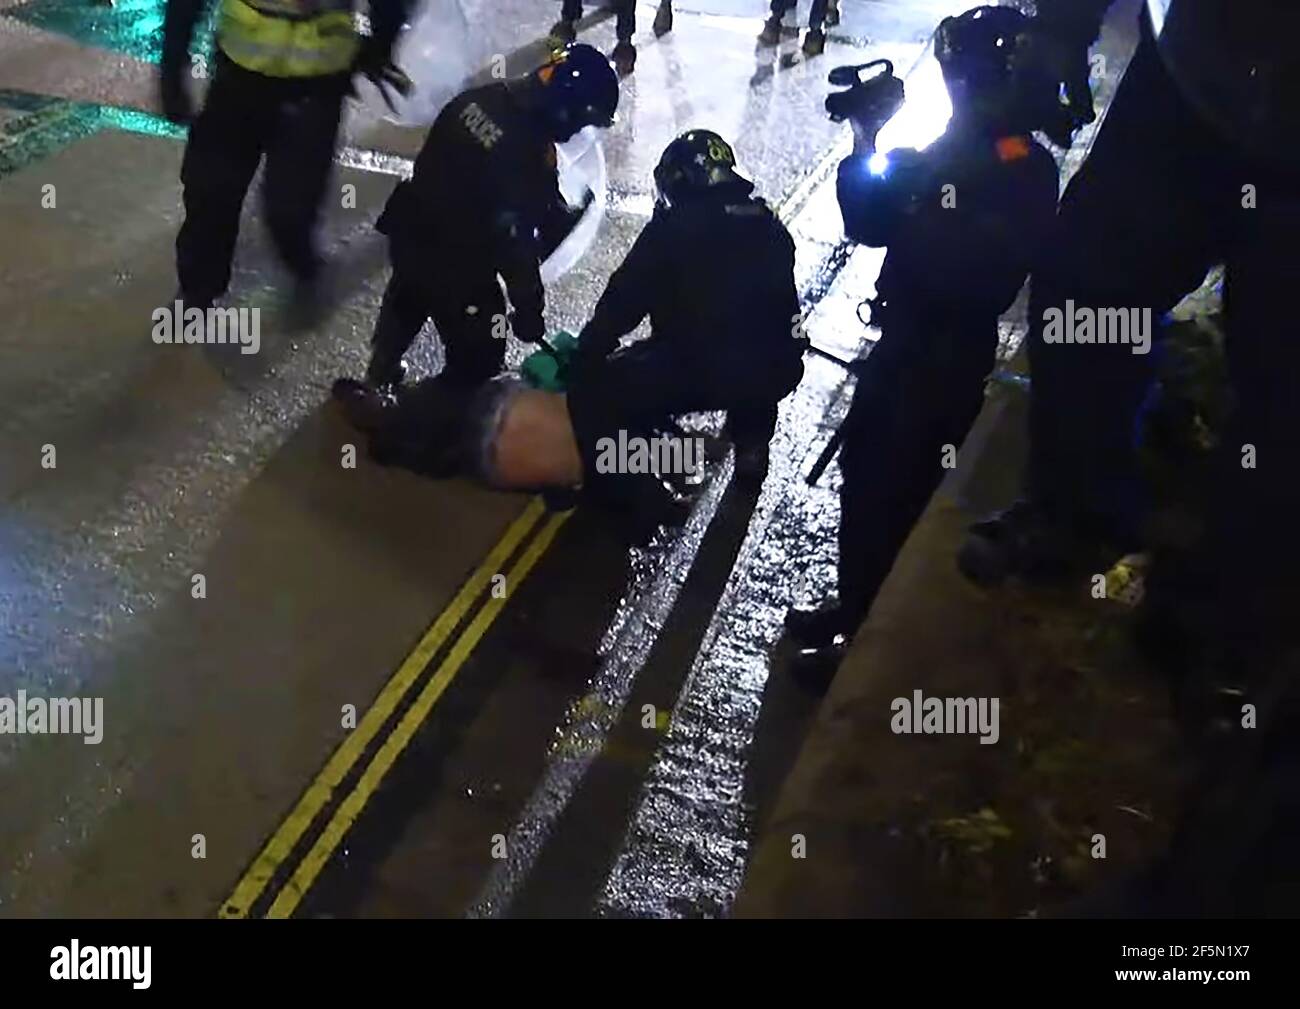 Video screenshot scattata quando la polizia riota ha accusato i manifestanti a Bristol protestando contro la nuova proposta britannica di legge anti-protesta (26 marzo 2021). ((la protesta in gran parte pacifica ha avuto luogo durante le restrizioni del covid (Coronus virus) contro i grandi raduni)) Foto Stock